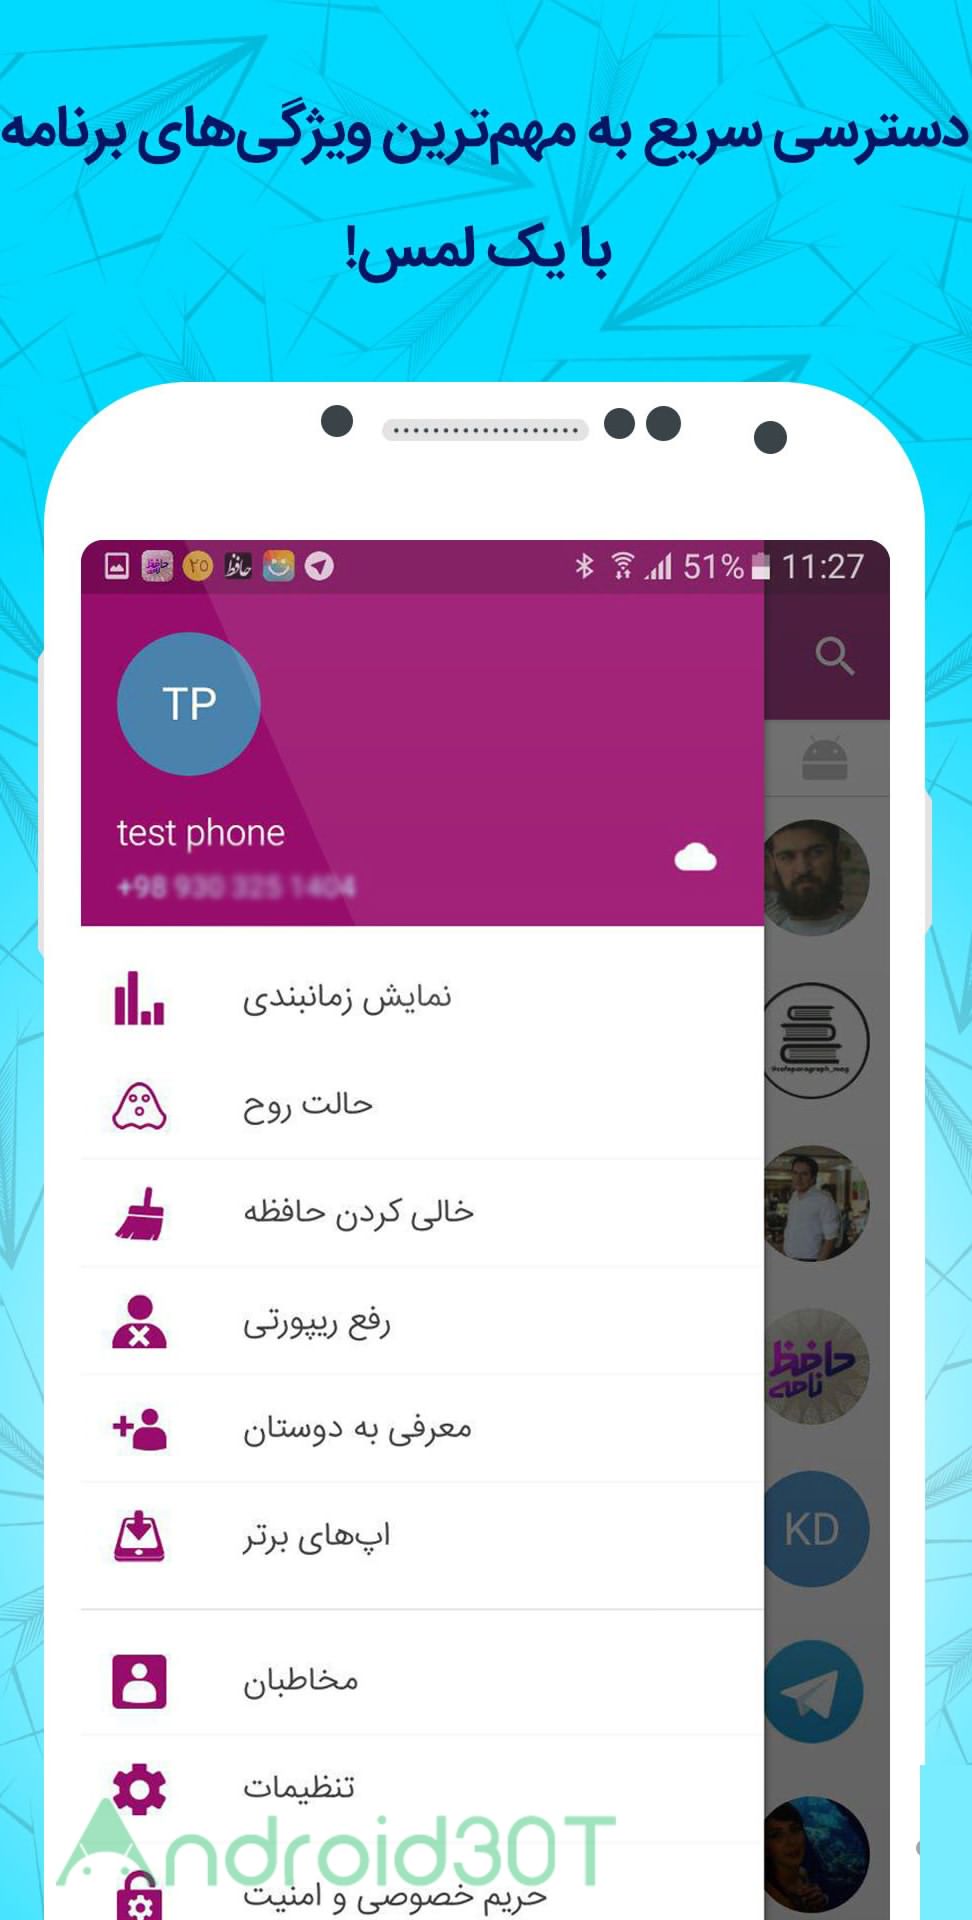 دانلود گرامی اندروید – تلگرام فارسی با امکانات ویژه